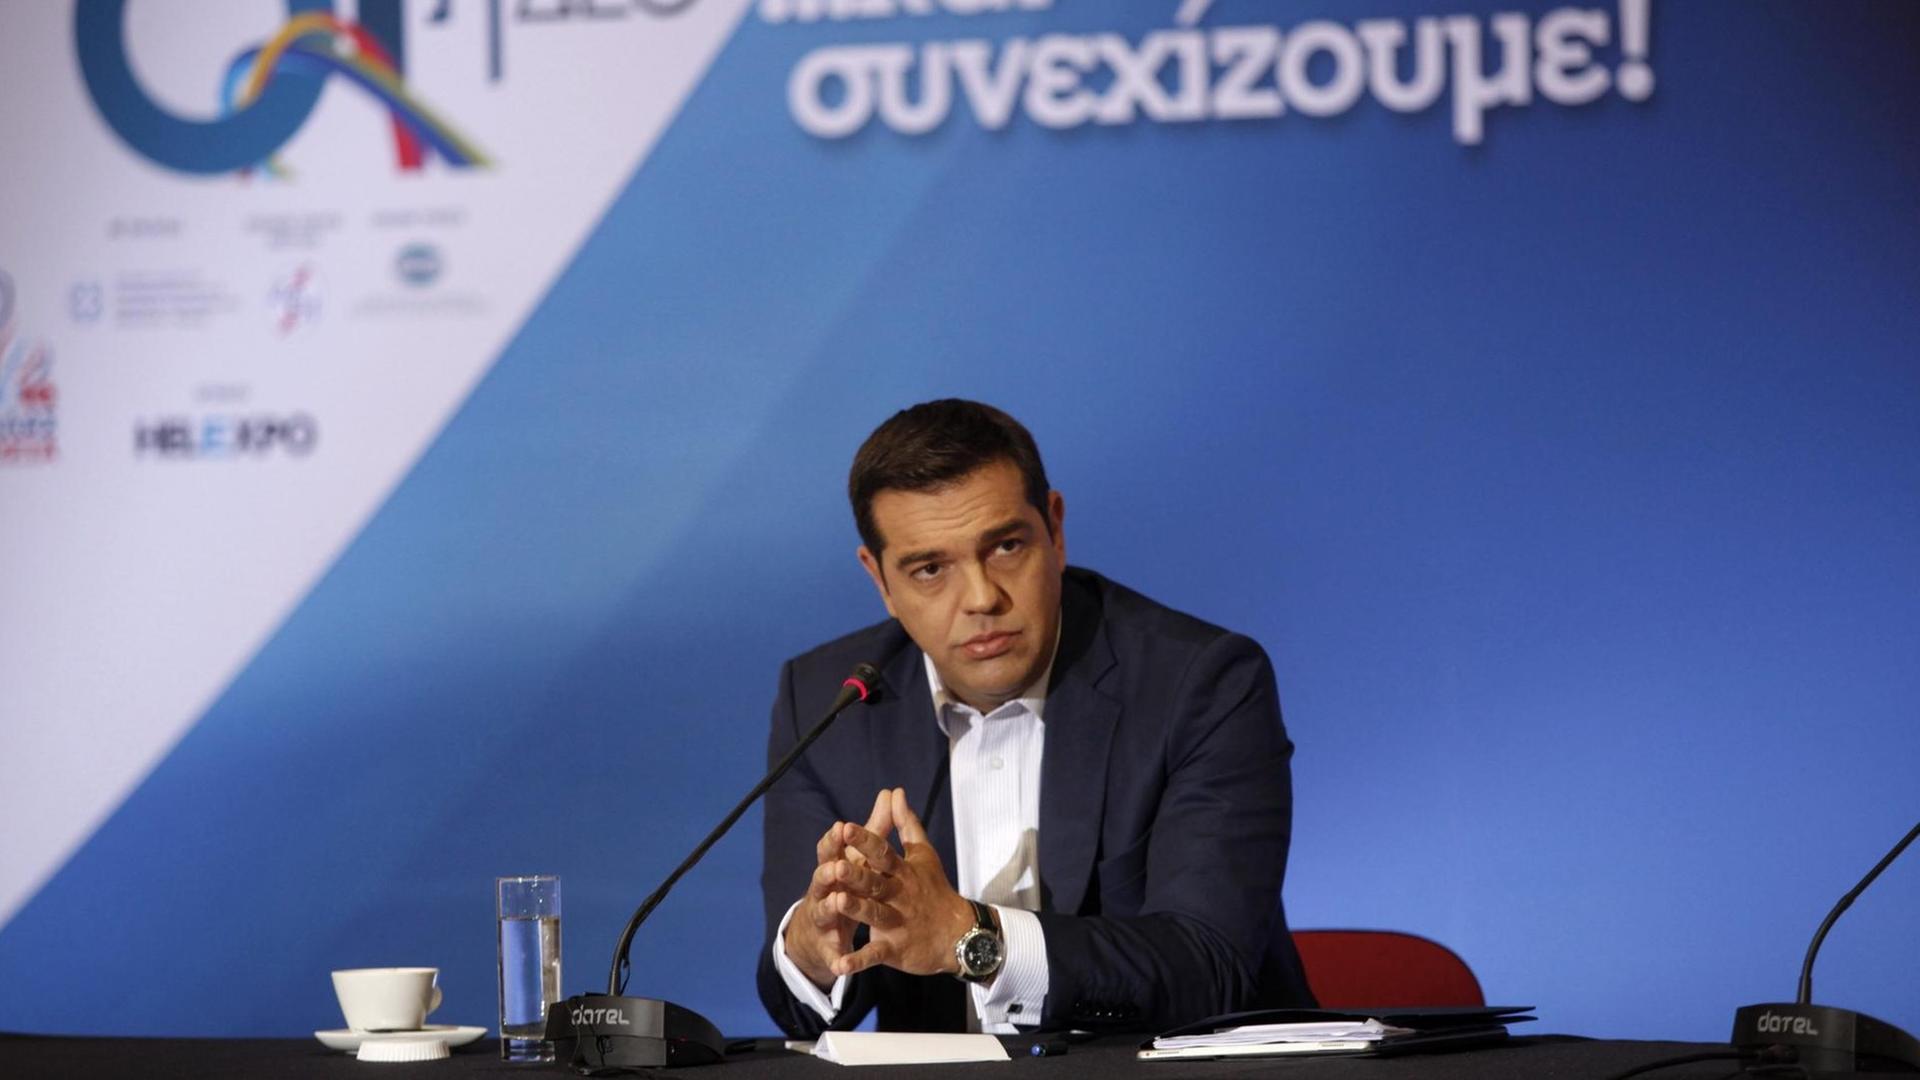 Griechenlands Ministerpräsident Alexis Tsipras hält auf der der Internationalen Messe in Thessaloniki einer Rede zur Wirtschaftspolitik.